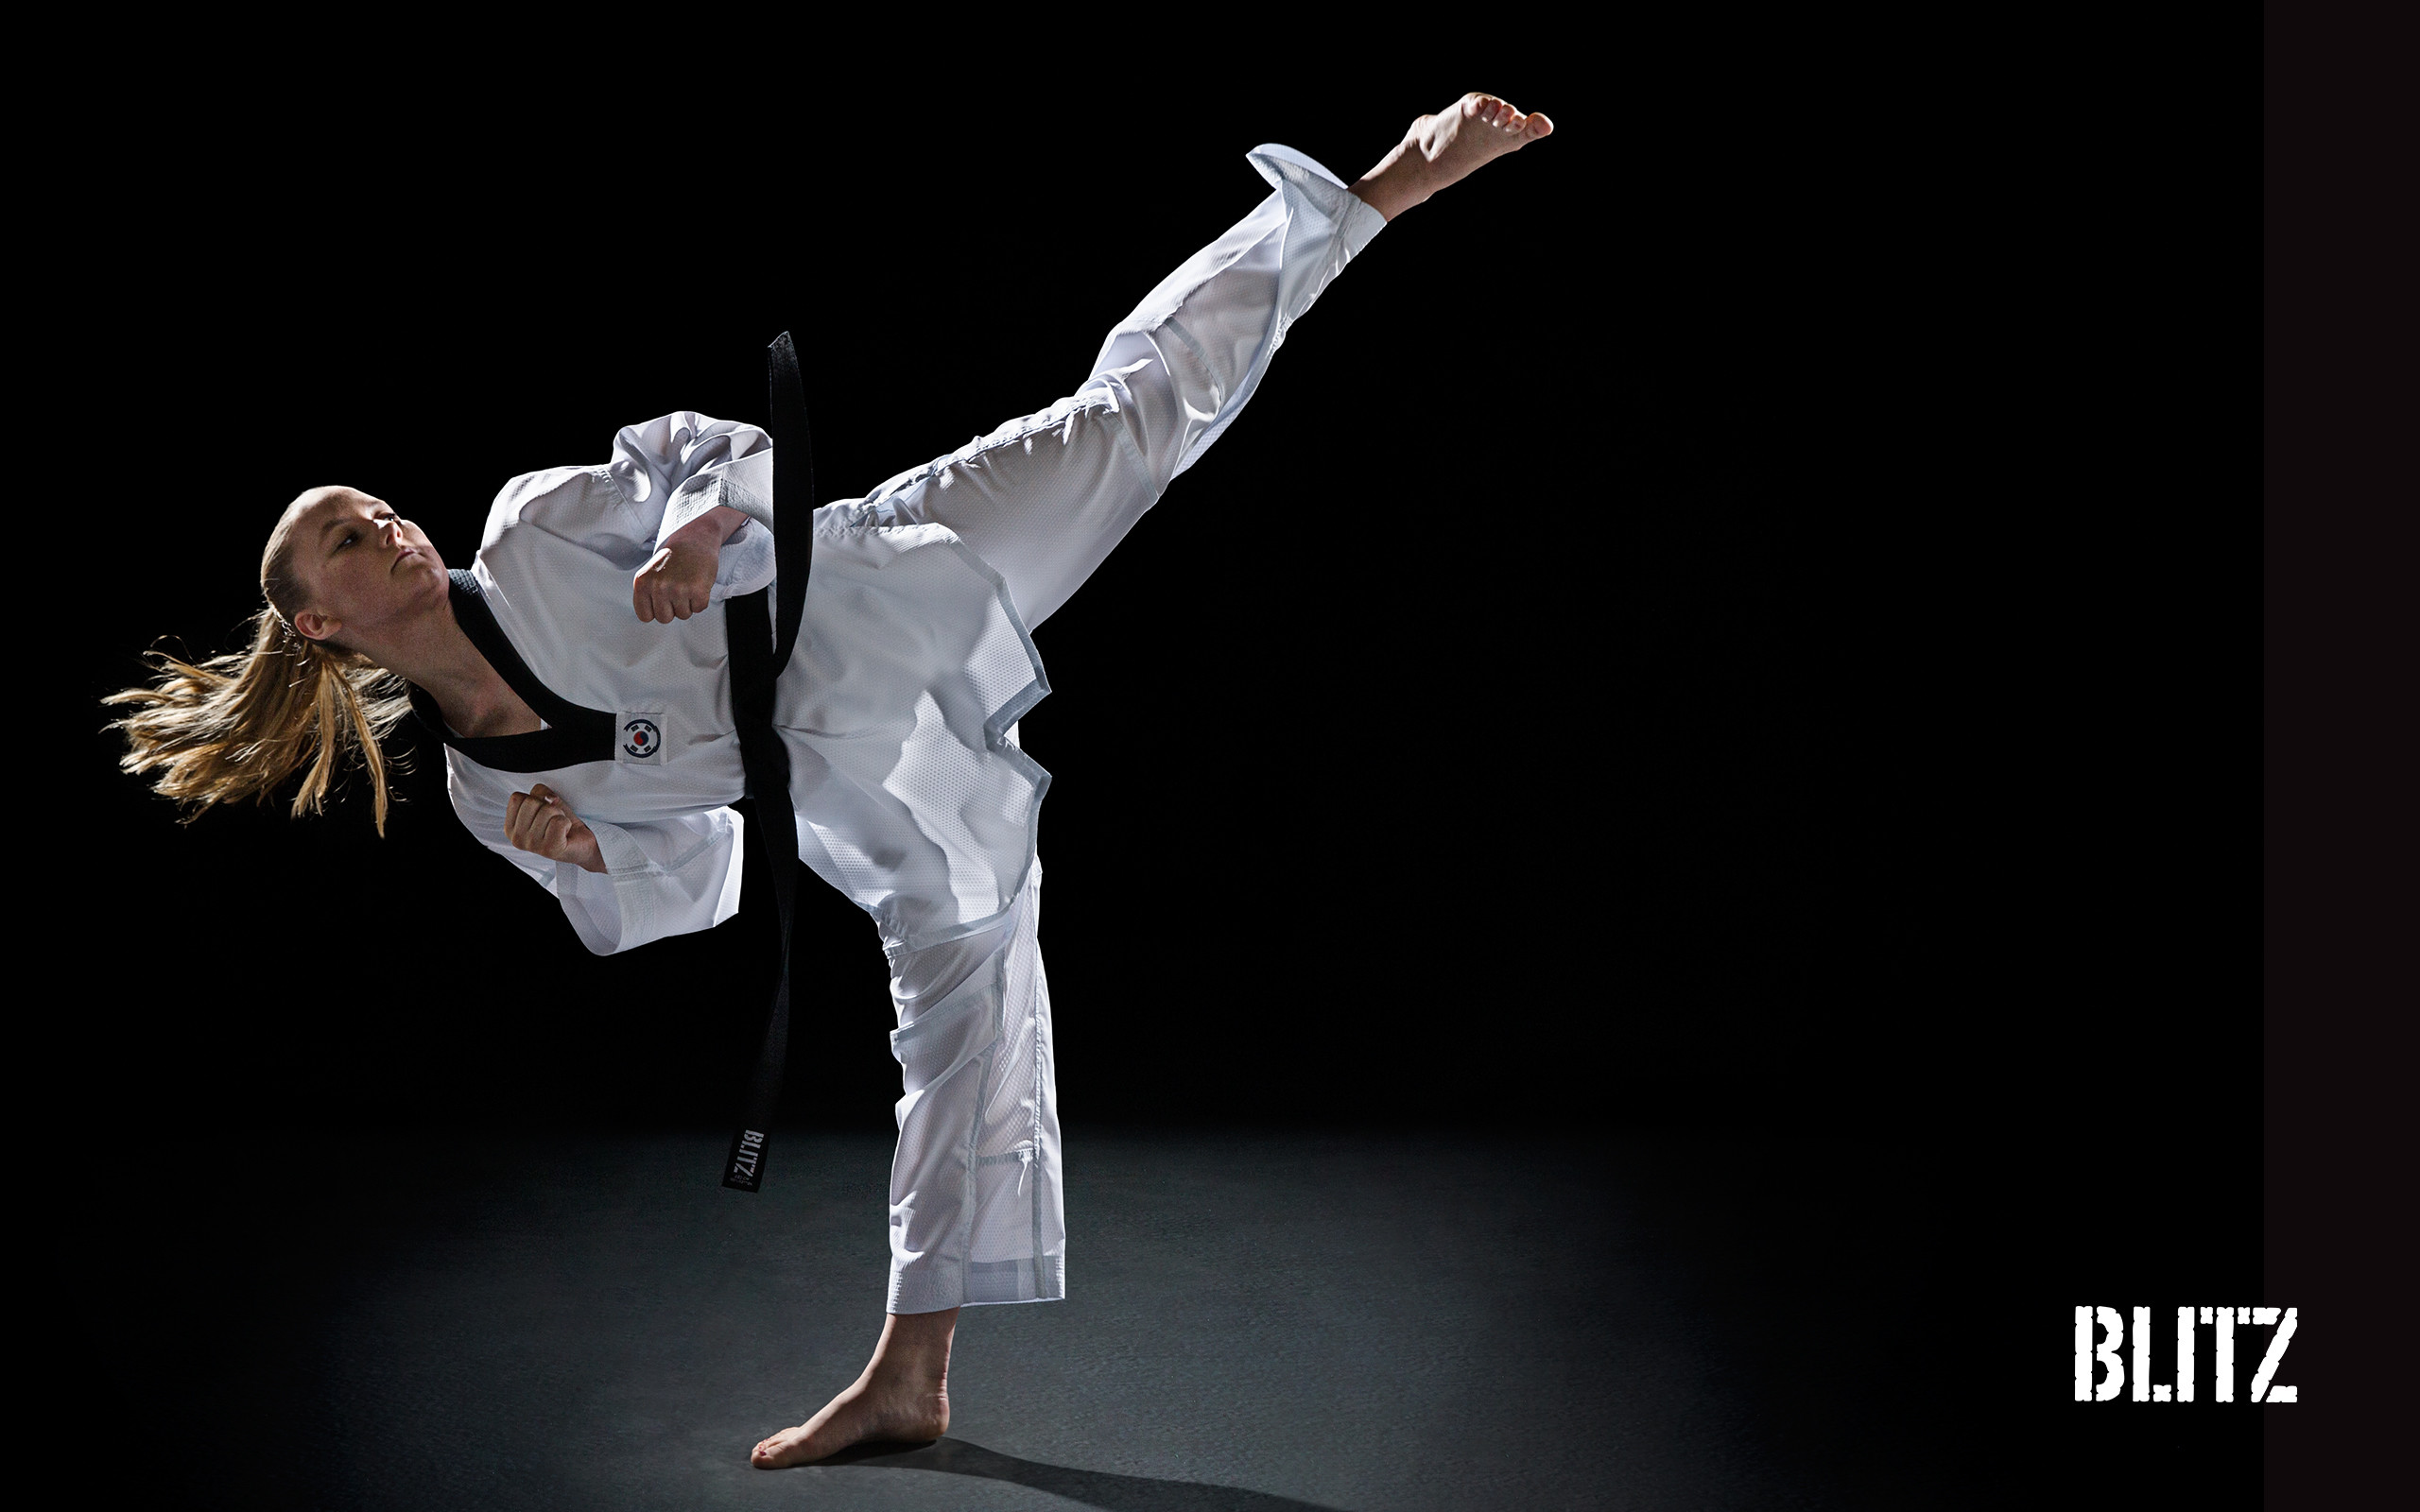 Karate Wallpaper Images  Free Download on Freepik